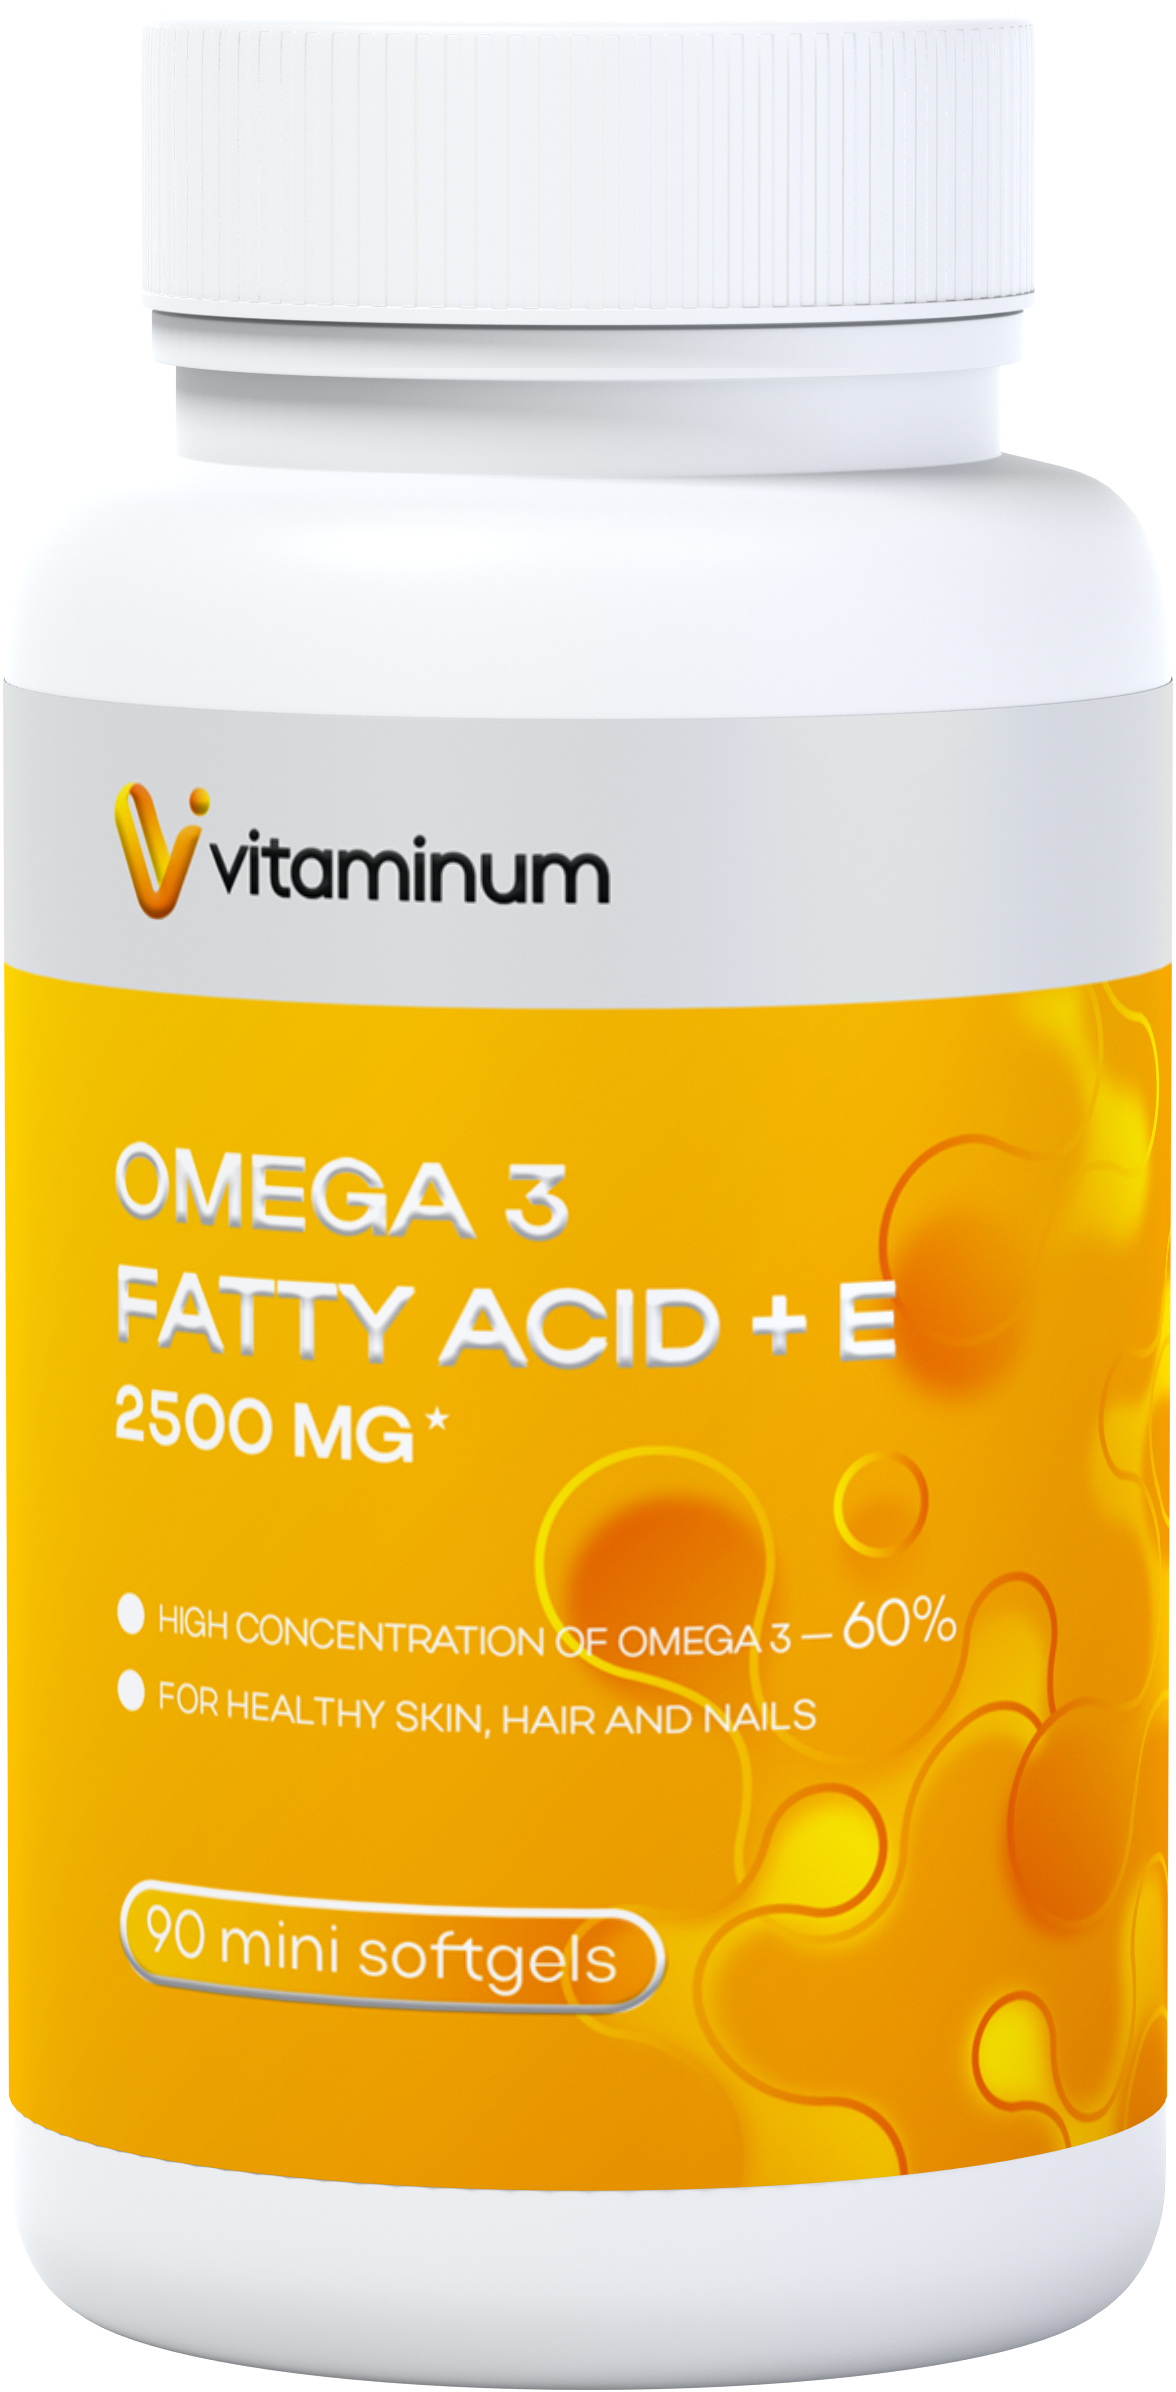  Vitaminum ОМЕГА 3 60% + витамин Е (2500 MG*) 90 капсул 700 мг  в Северодвинске